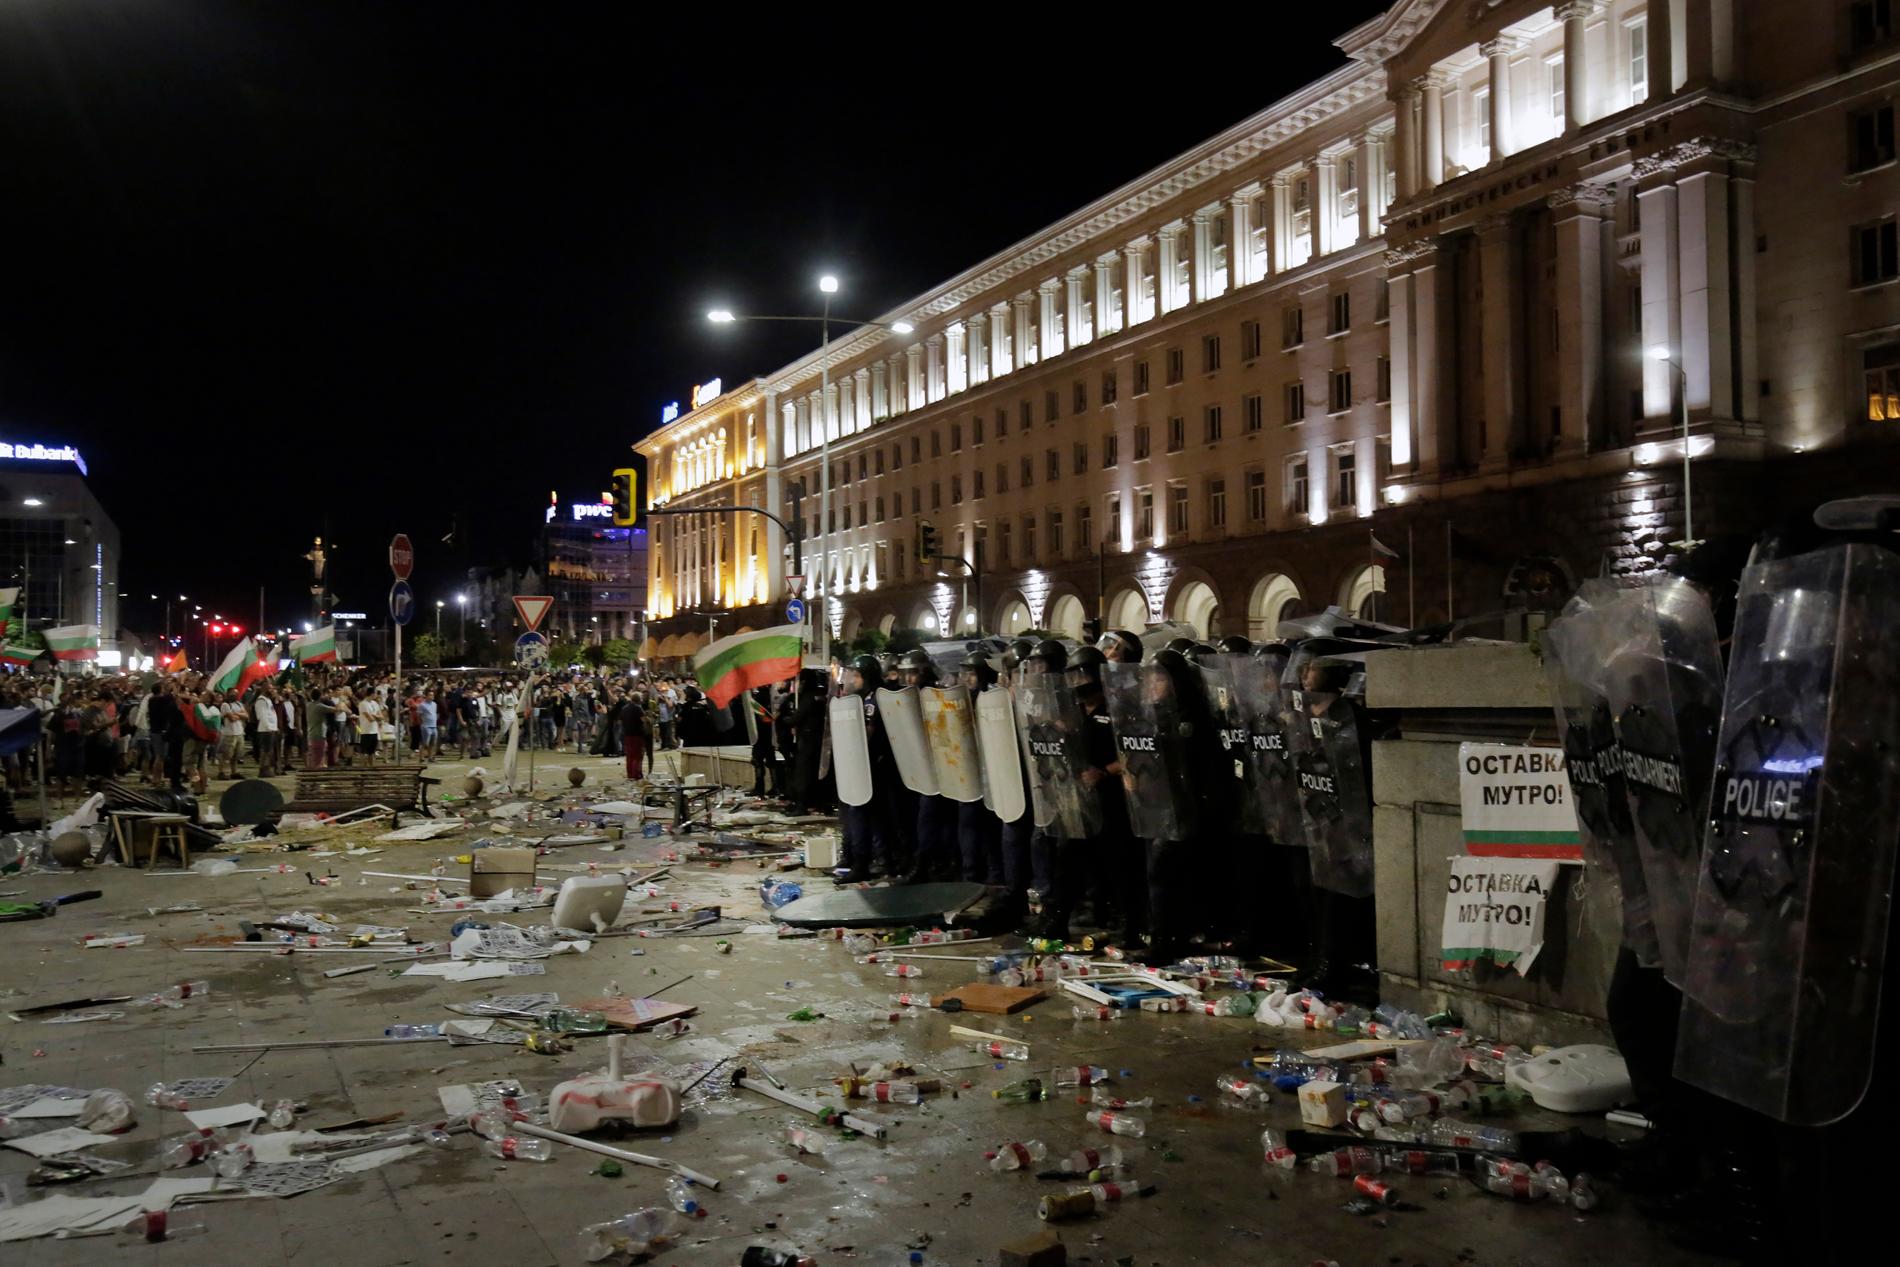 Den 2 september hölls en stor demonstration mot regeringen i Bulgariens huvudstad Sofia. Hundratals poliser kallades in för att hindra stenkastande demonstranter från att komma närmare parlamentsbyggnaden.